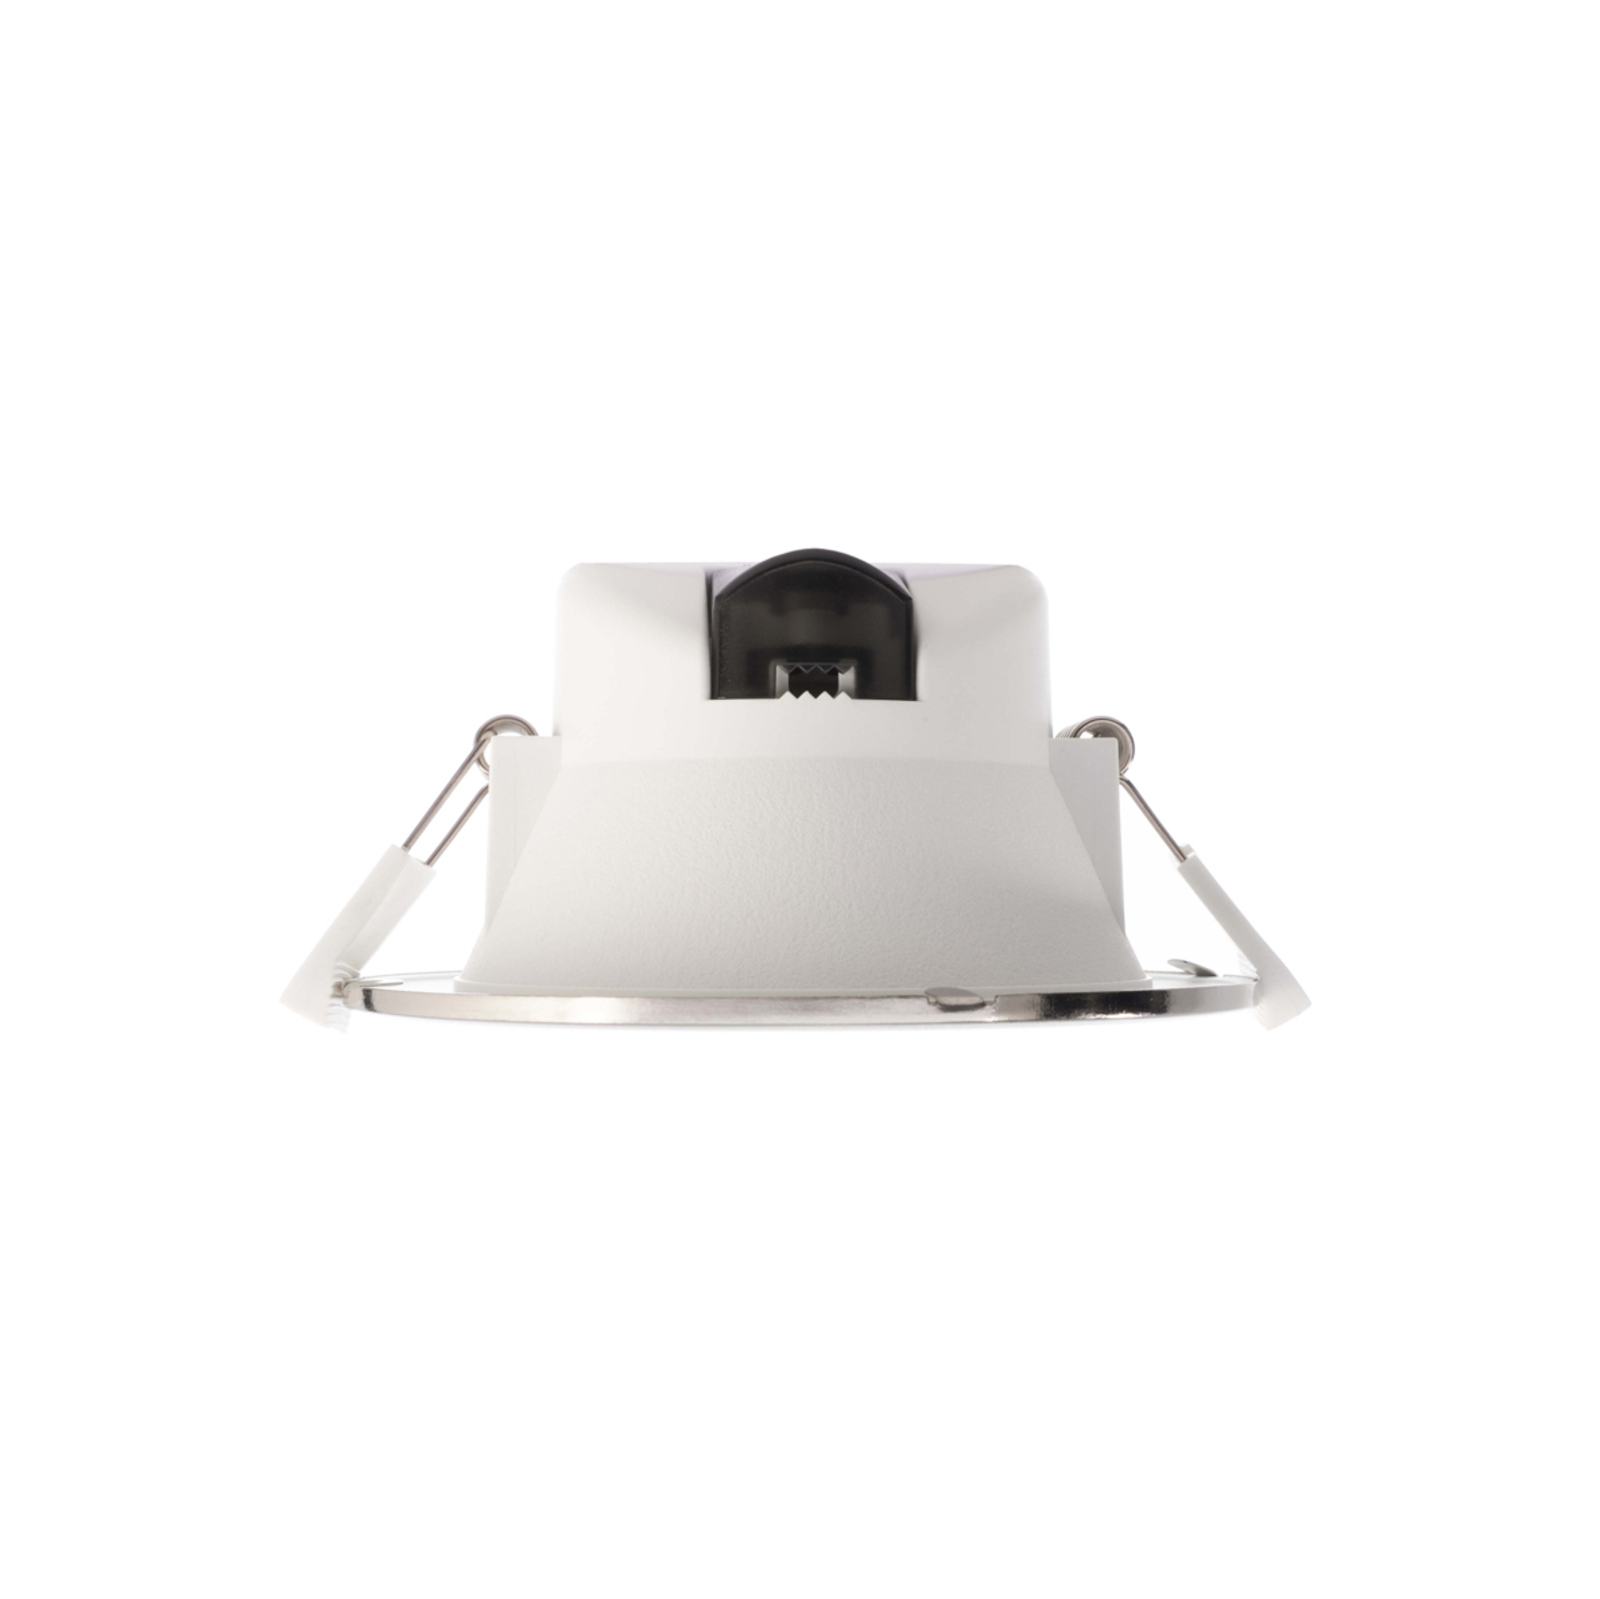 Acrux 145 uppoasennettava LED-valaisin, valkoinen, Ø 17,4 cm